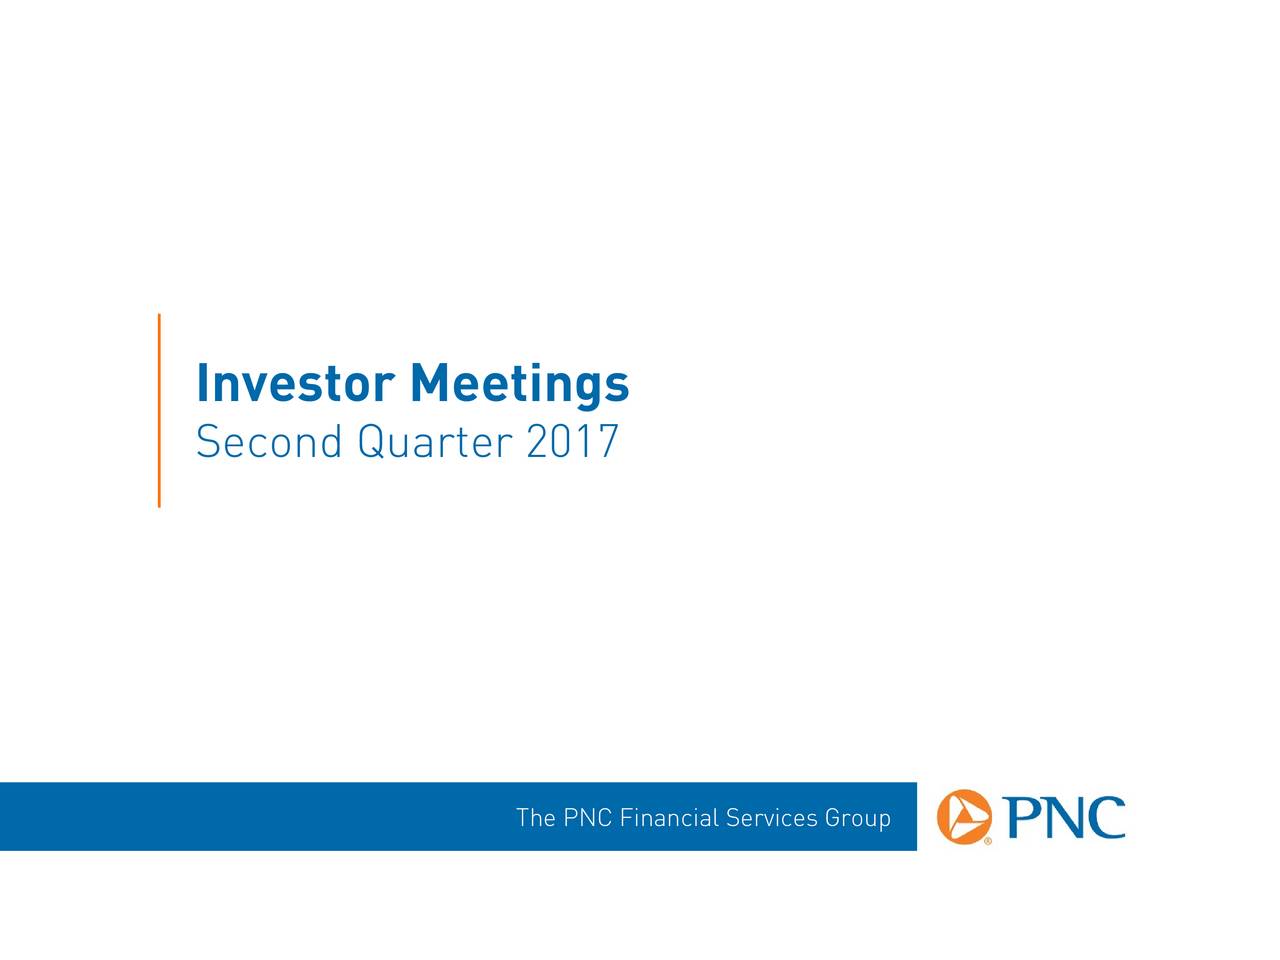 Second Quarter 2017 The PNC Financial Services Group